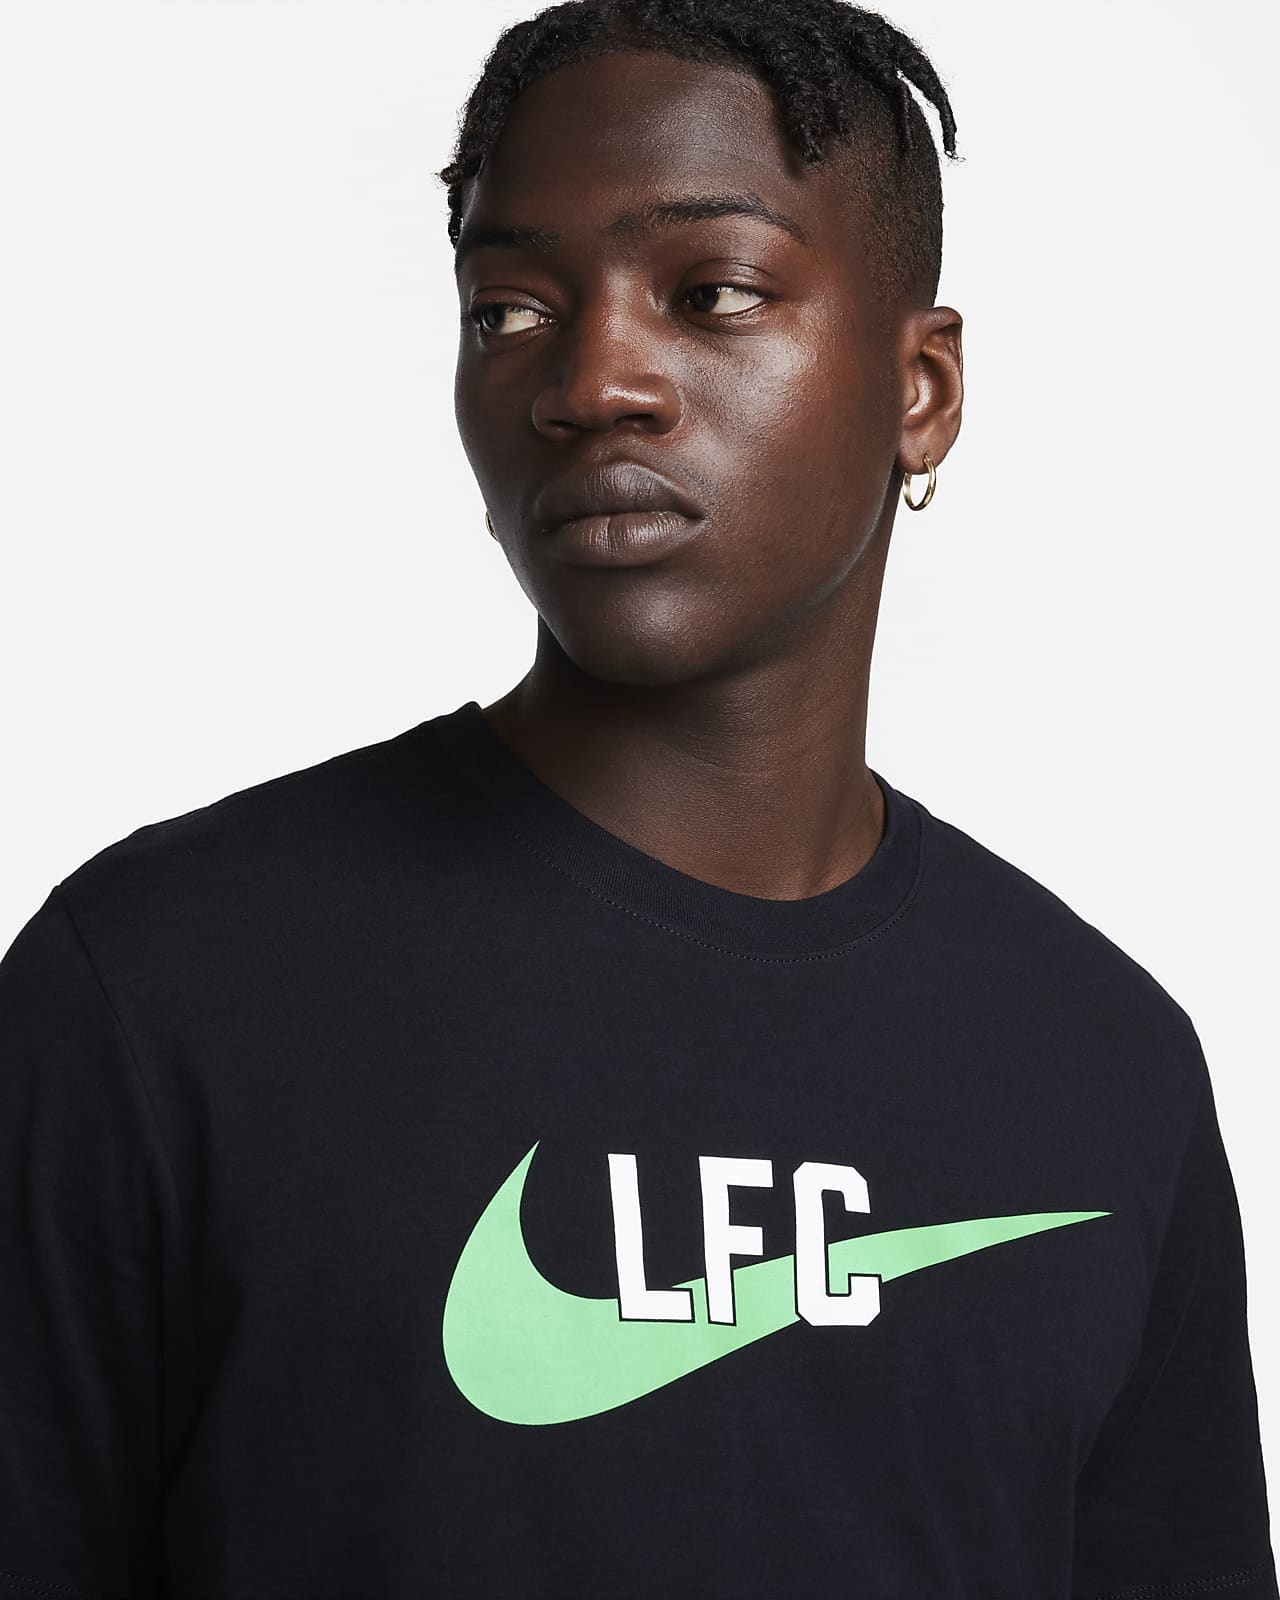 Green Tops & T-Shirts. Nike LU